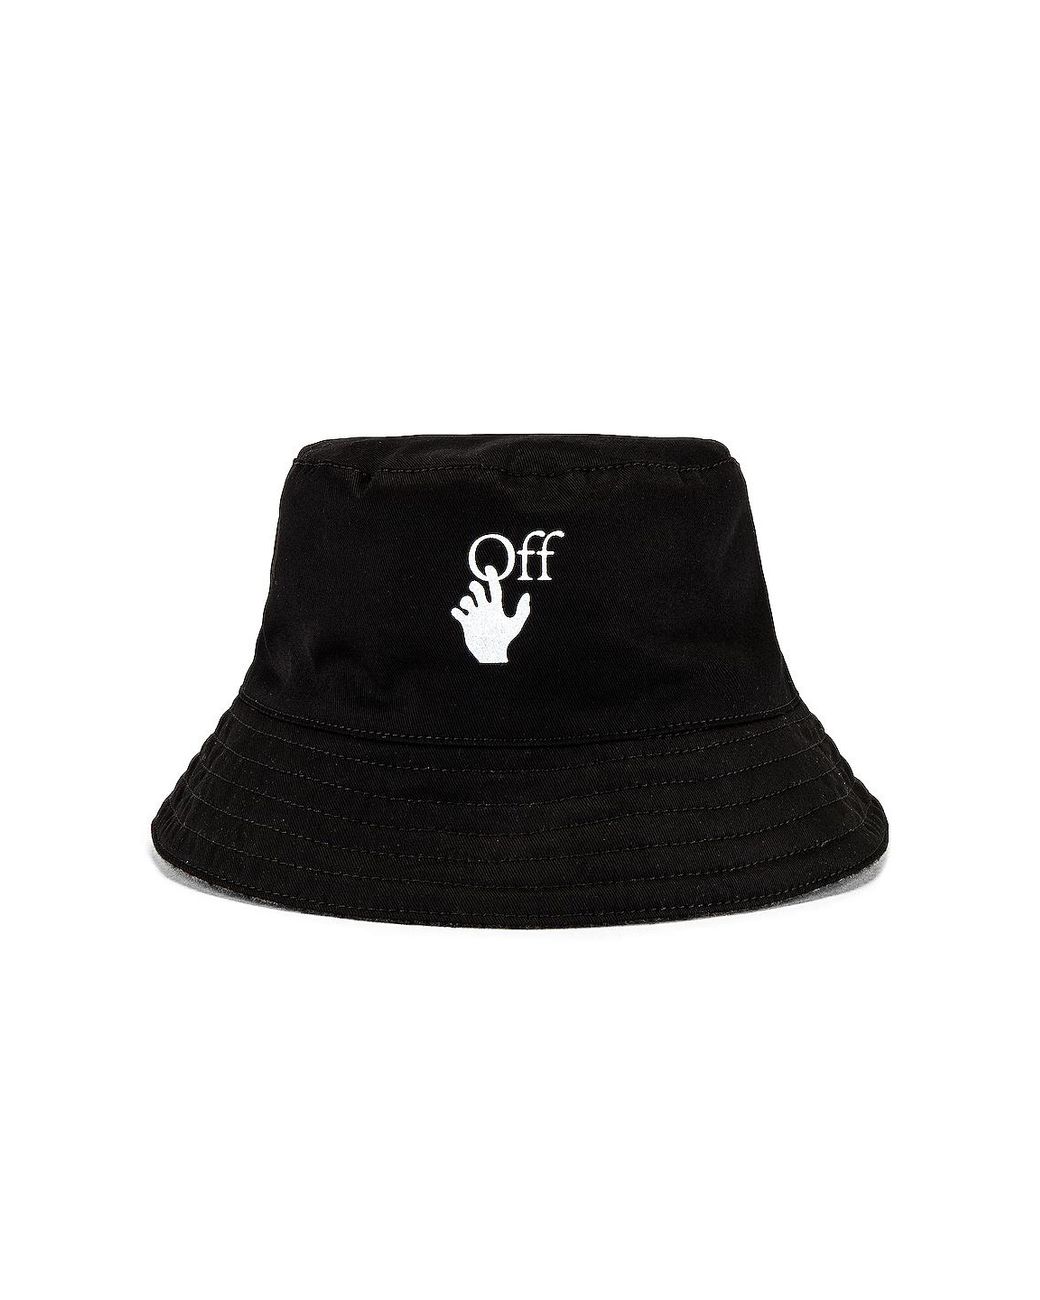 Off-White c/o Virgil Abloh Wool Bucket Hat in Black & Dark Grey (Black